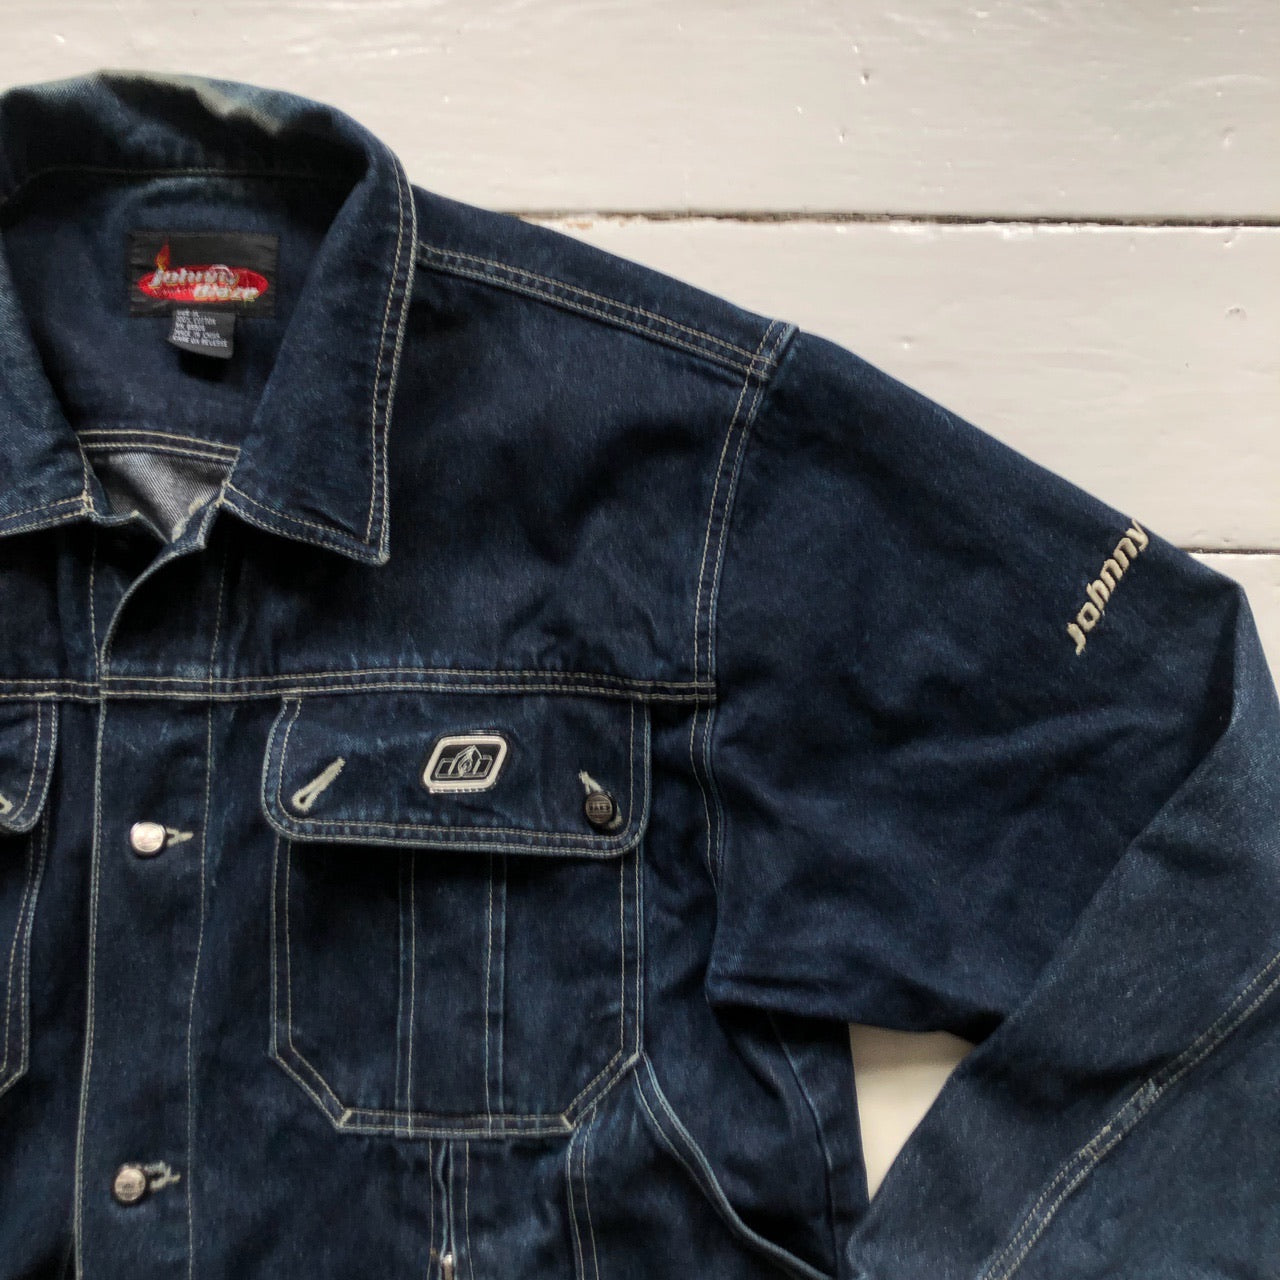 Johnny Blaze Vintage Denim Jacket (XL)